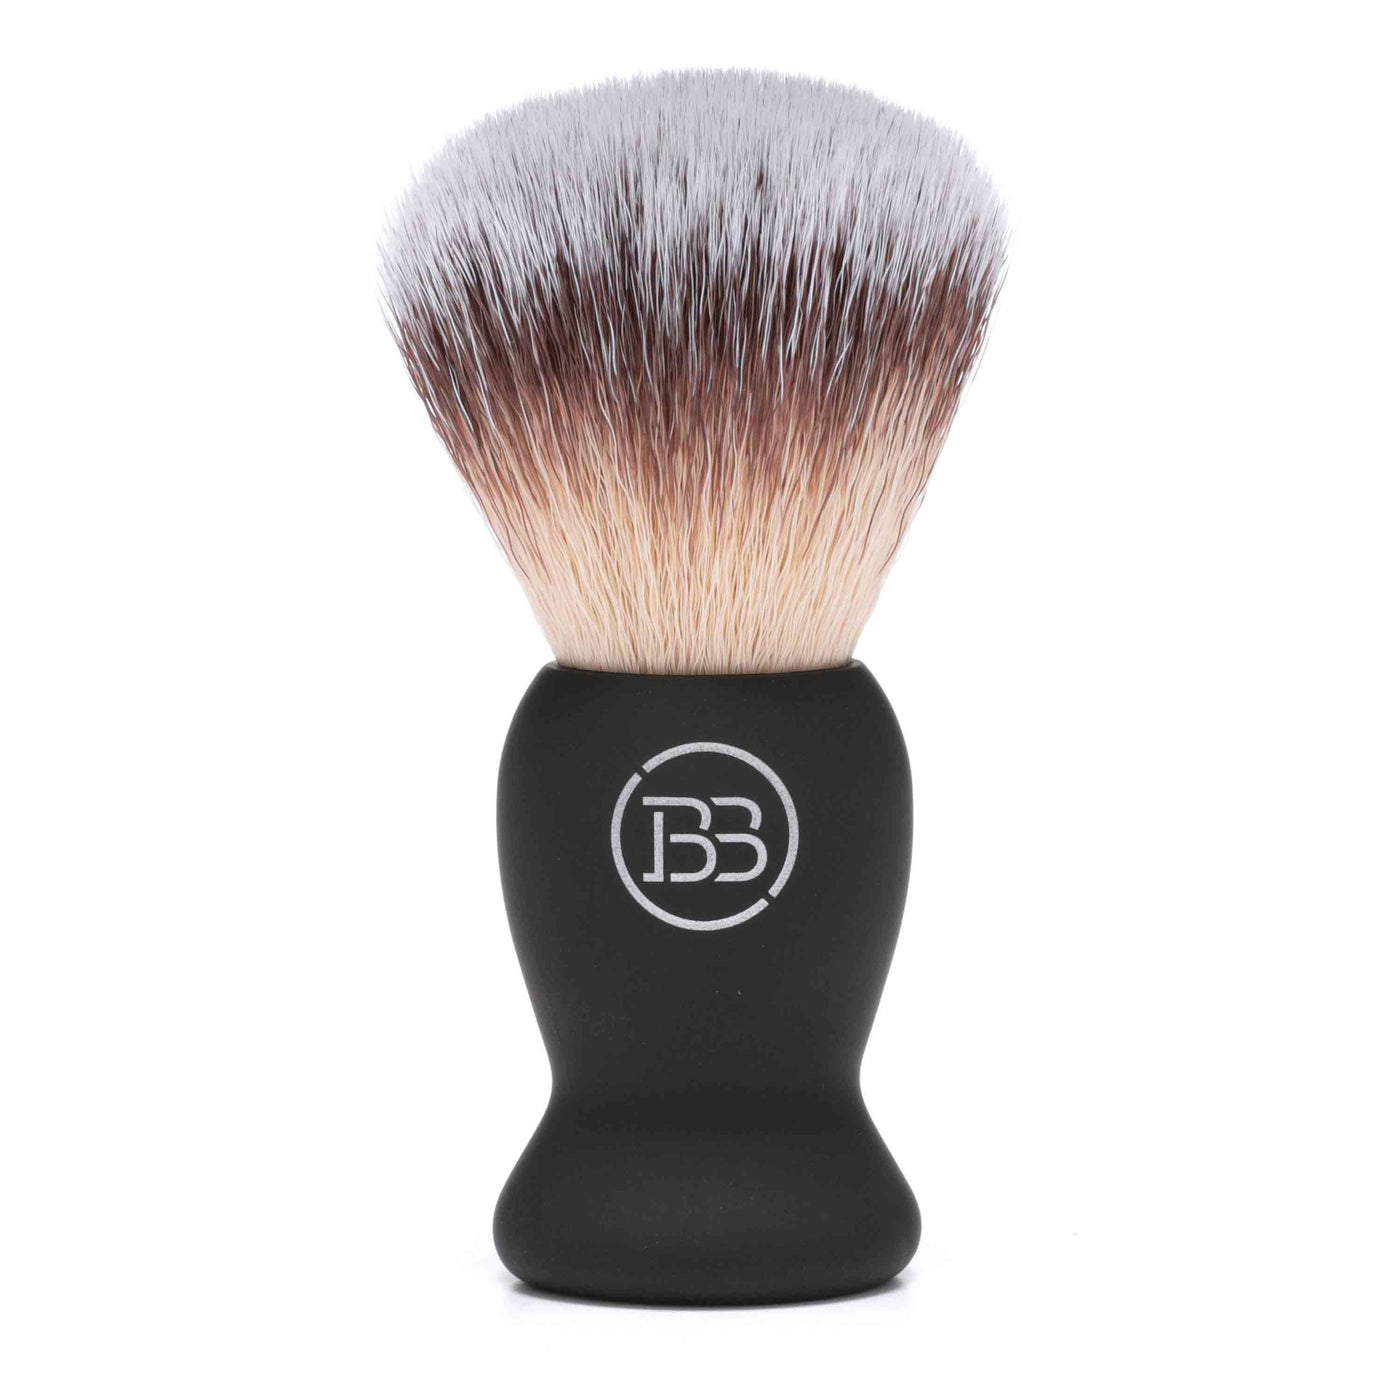 Badger Shaving Brush by Battle Brothers Shaving Co.